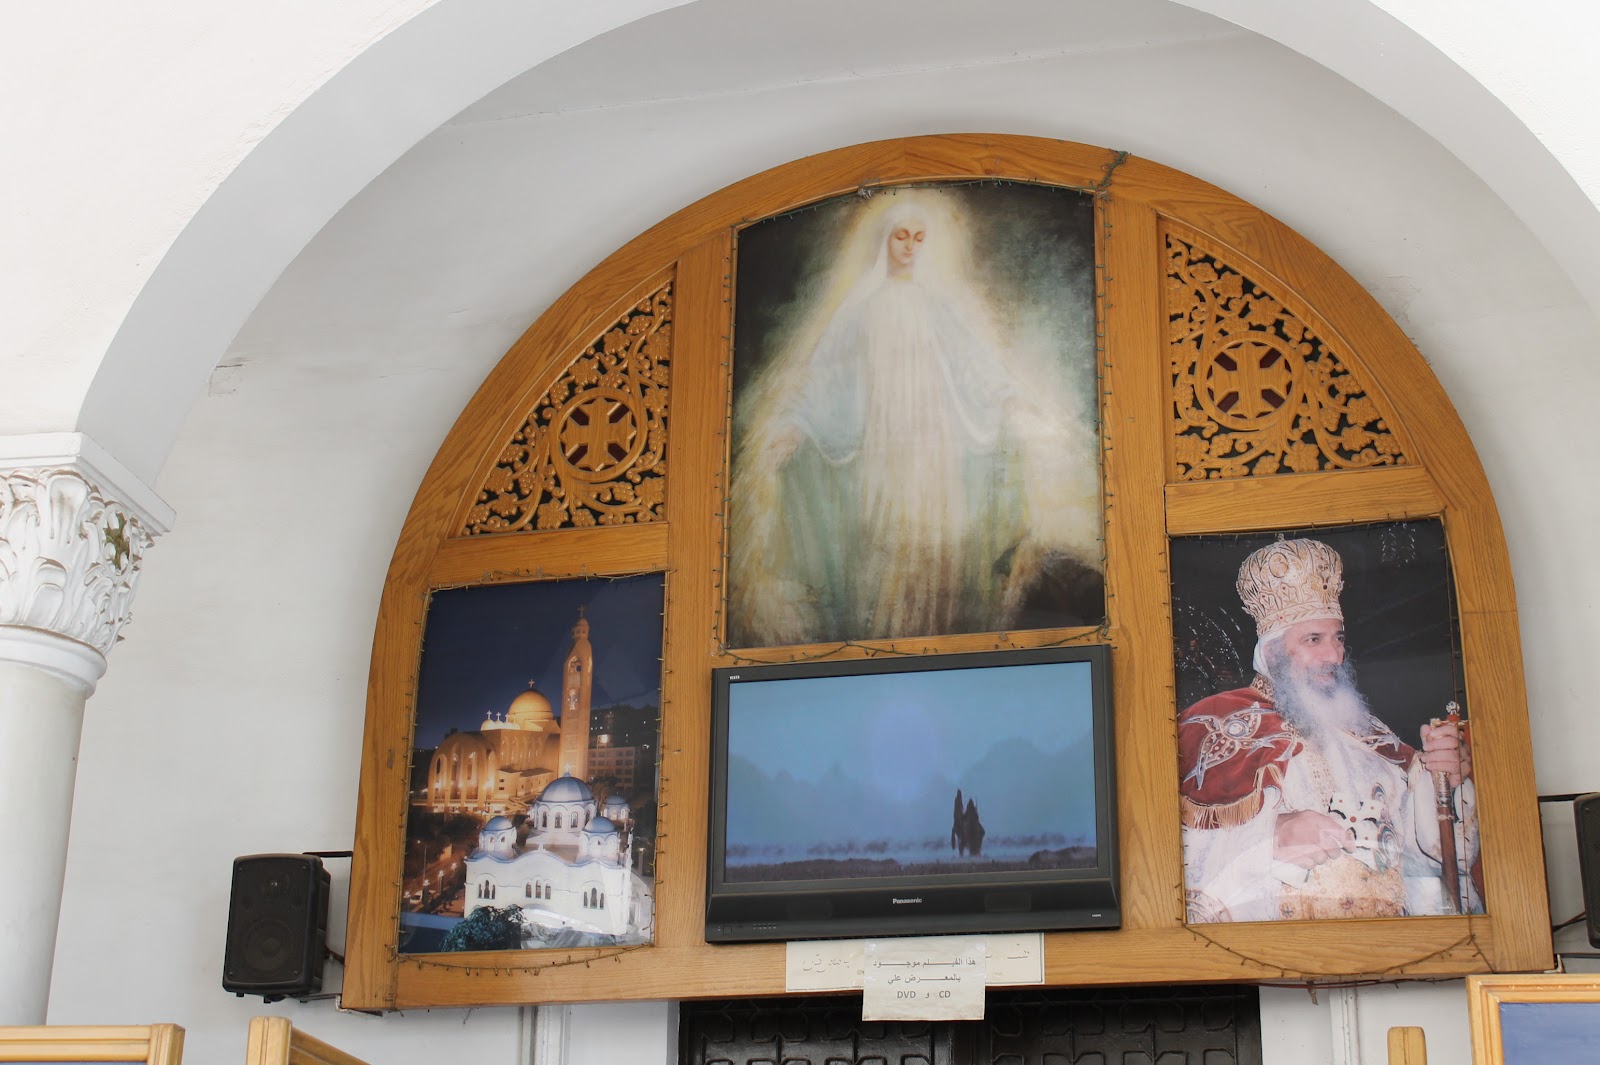 Apariciones que Vieron 250 mil Personas: Nuestra Señora de la Luz, Zeitun, Egipto (2 abr)